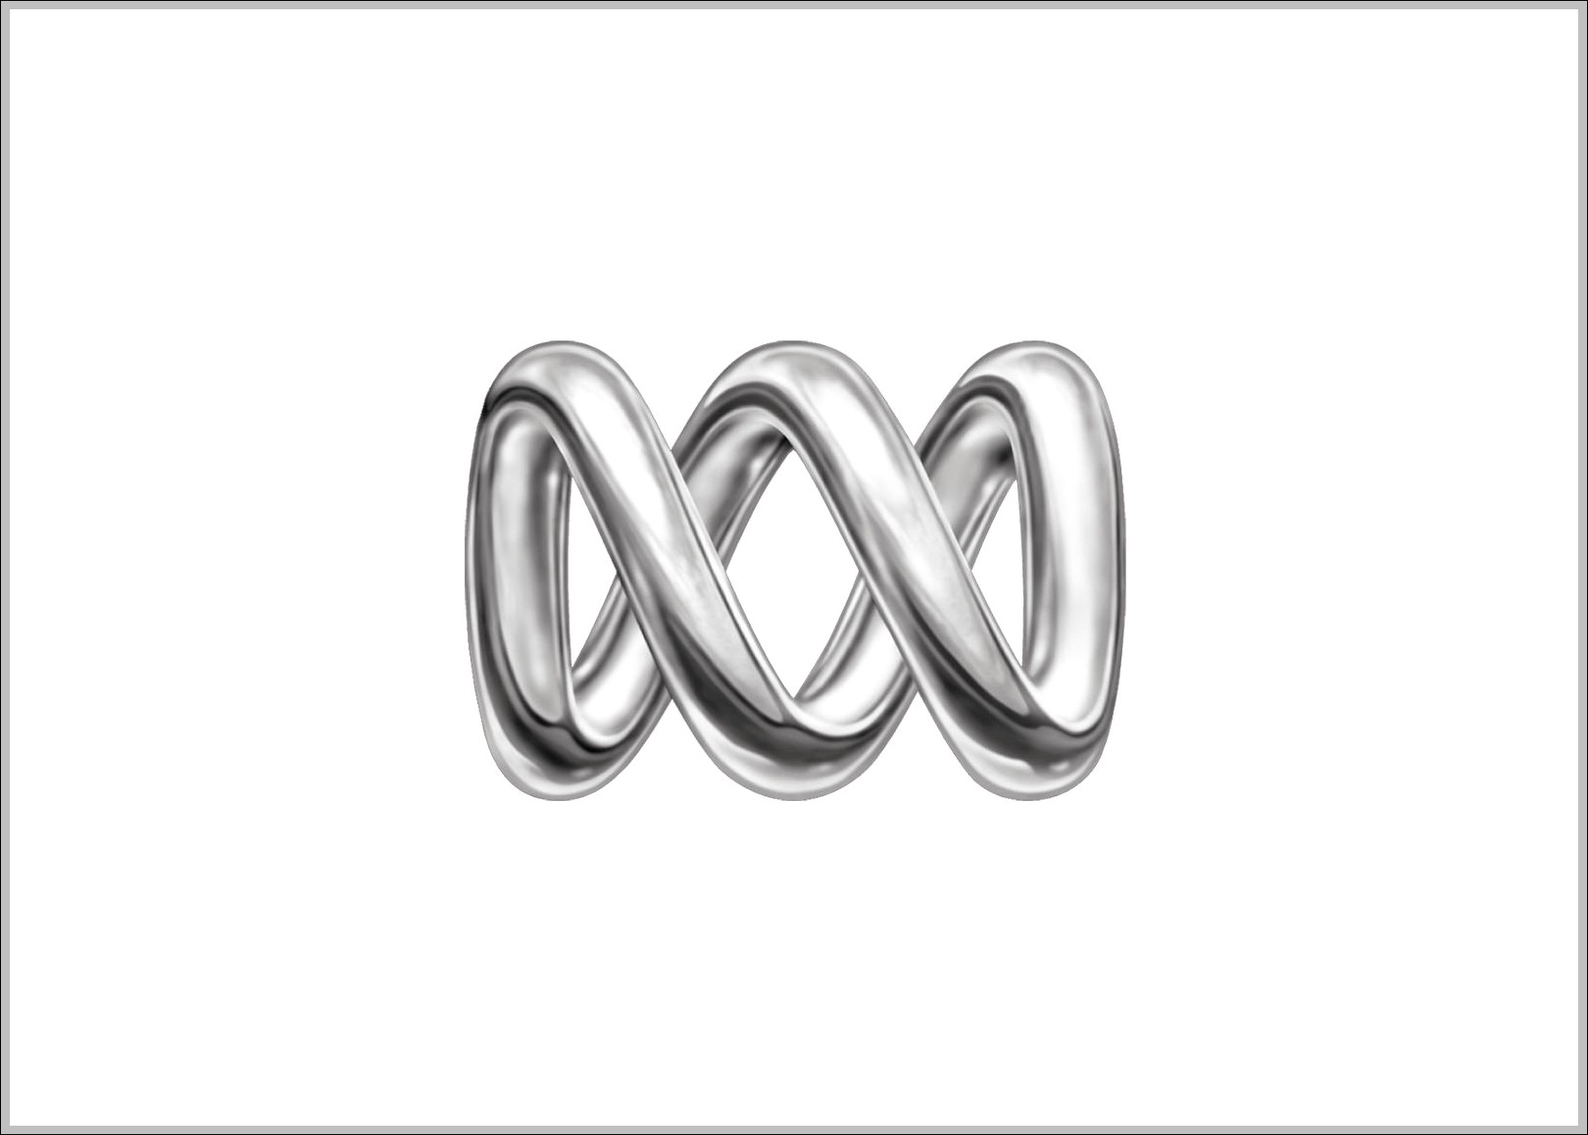 ABC Australia logo